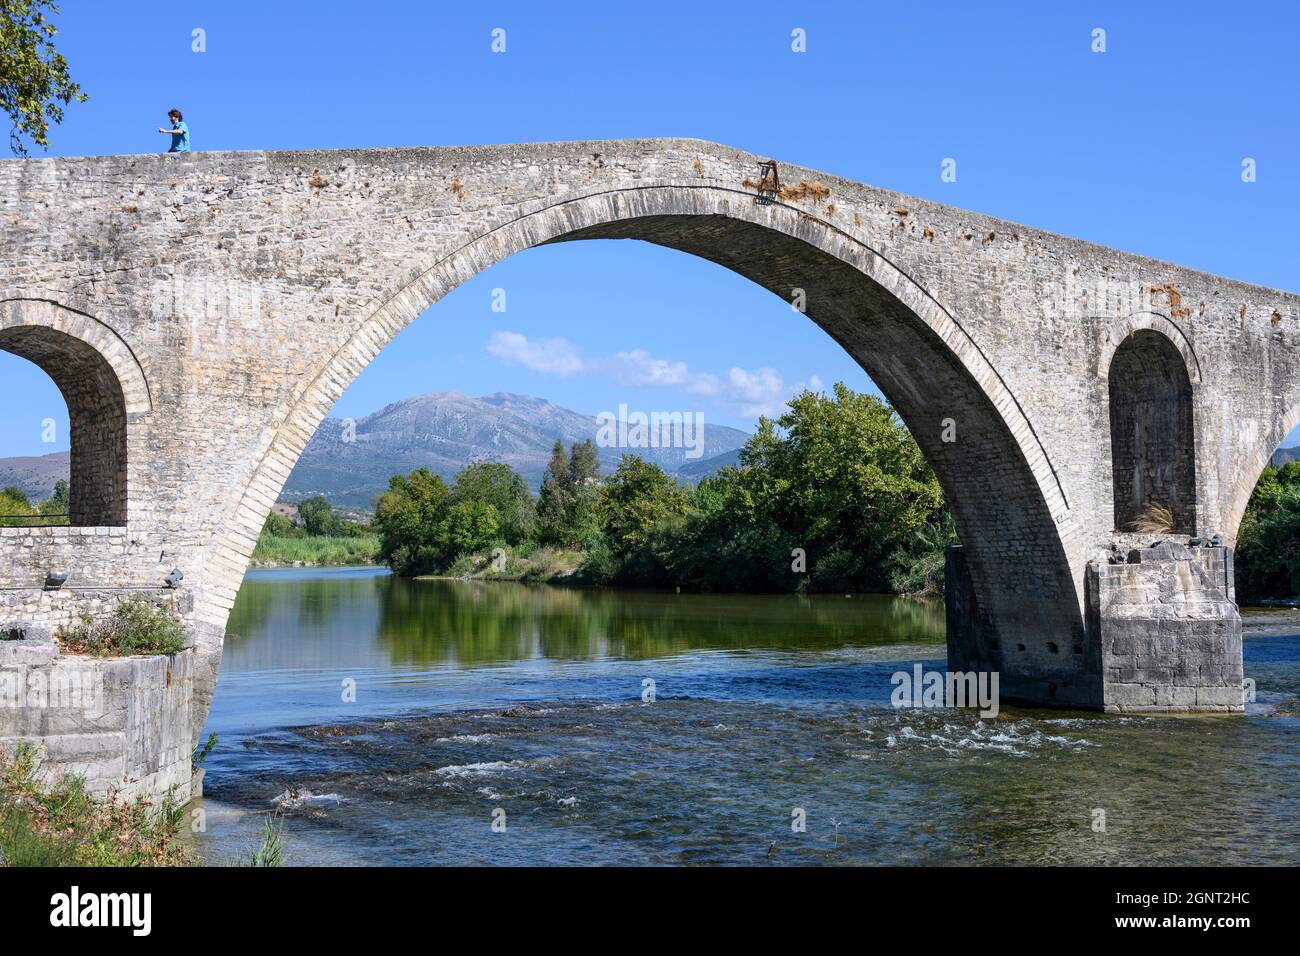 Le célèbre pont de pierre ottoman à Arta construit au début du XVIIe cen. Sur les fondations romaines et médieavales antérieures, la municipalité d'Arta, Epirus, Grèce. Banque D'Images